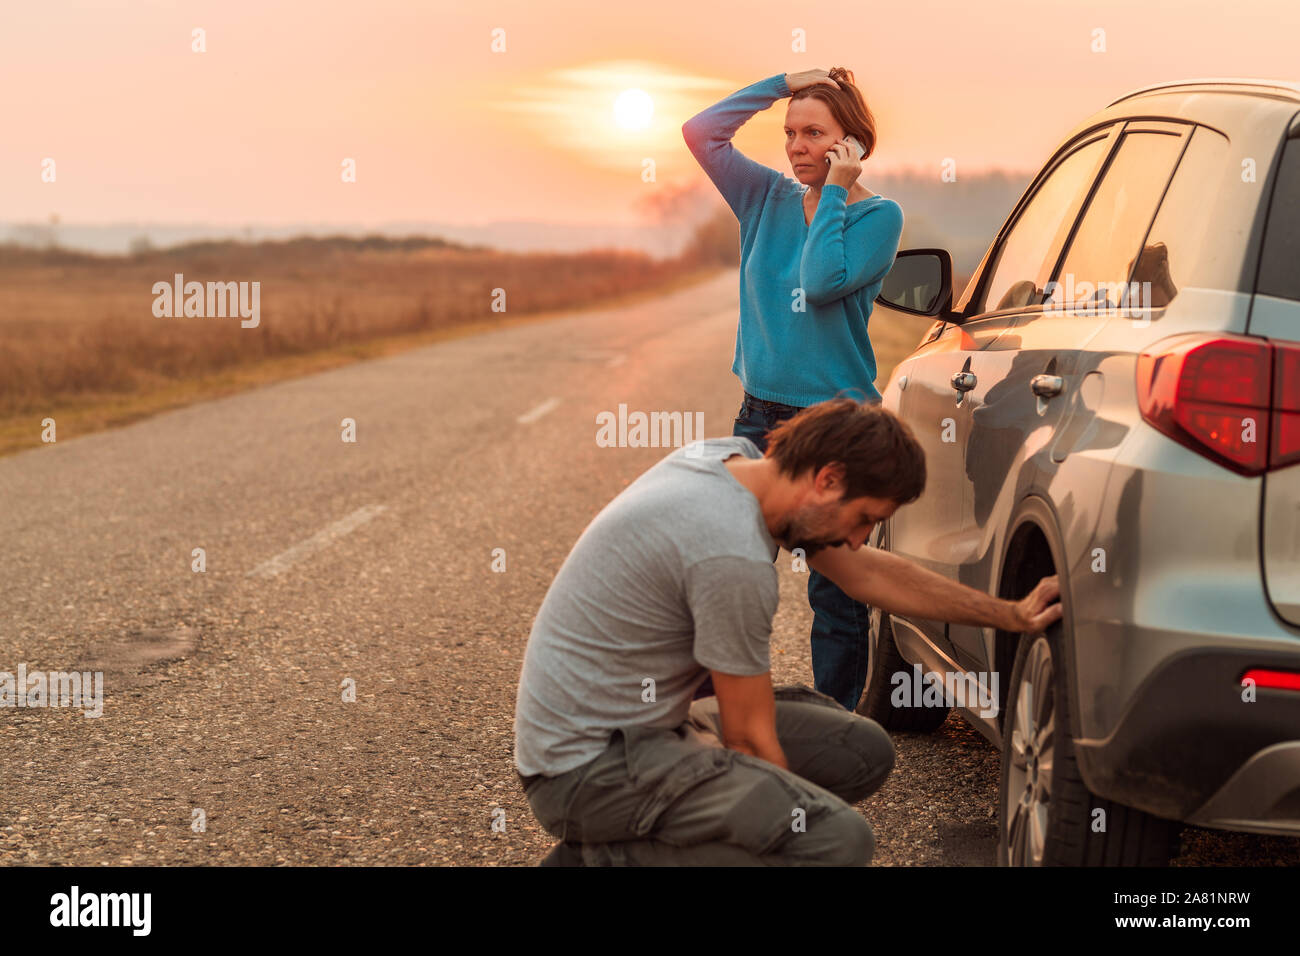 Réparation de pneu à plat quelques voitures sur la route en automne coucher du soleil et appelant à l'assistance routière, selective focus Banque D'Images